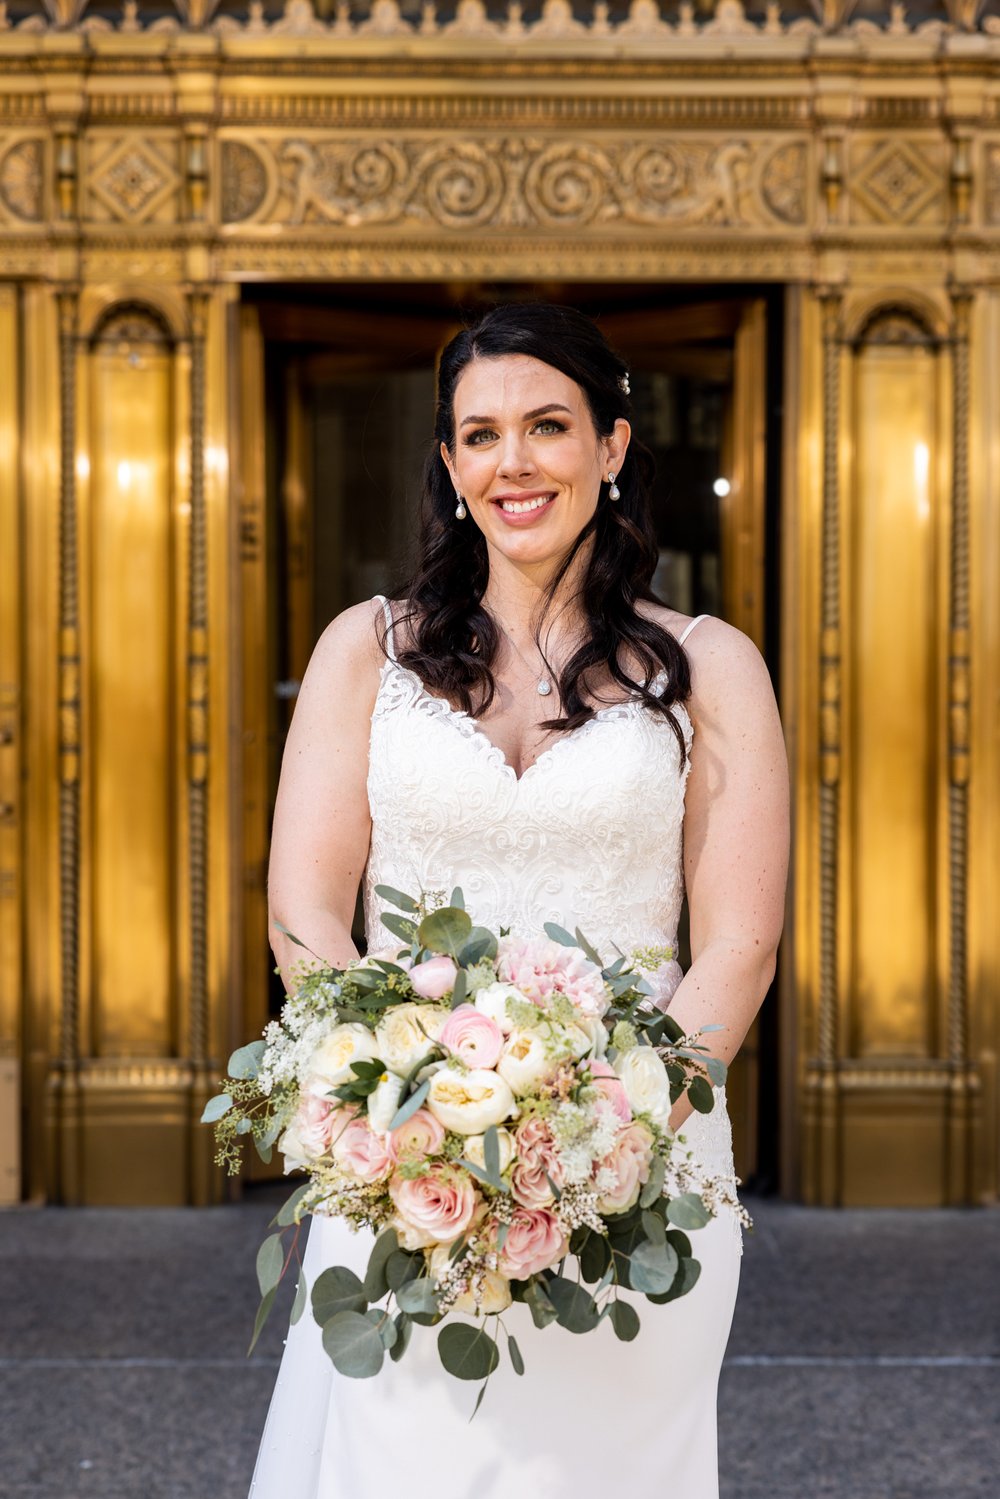 Alex Maldonado Photography | Chicago Wedding Photographer | bride portrait wrigley building gold trim.jpg